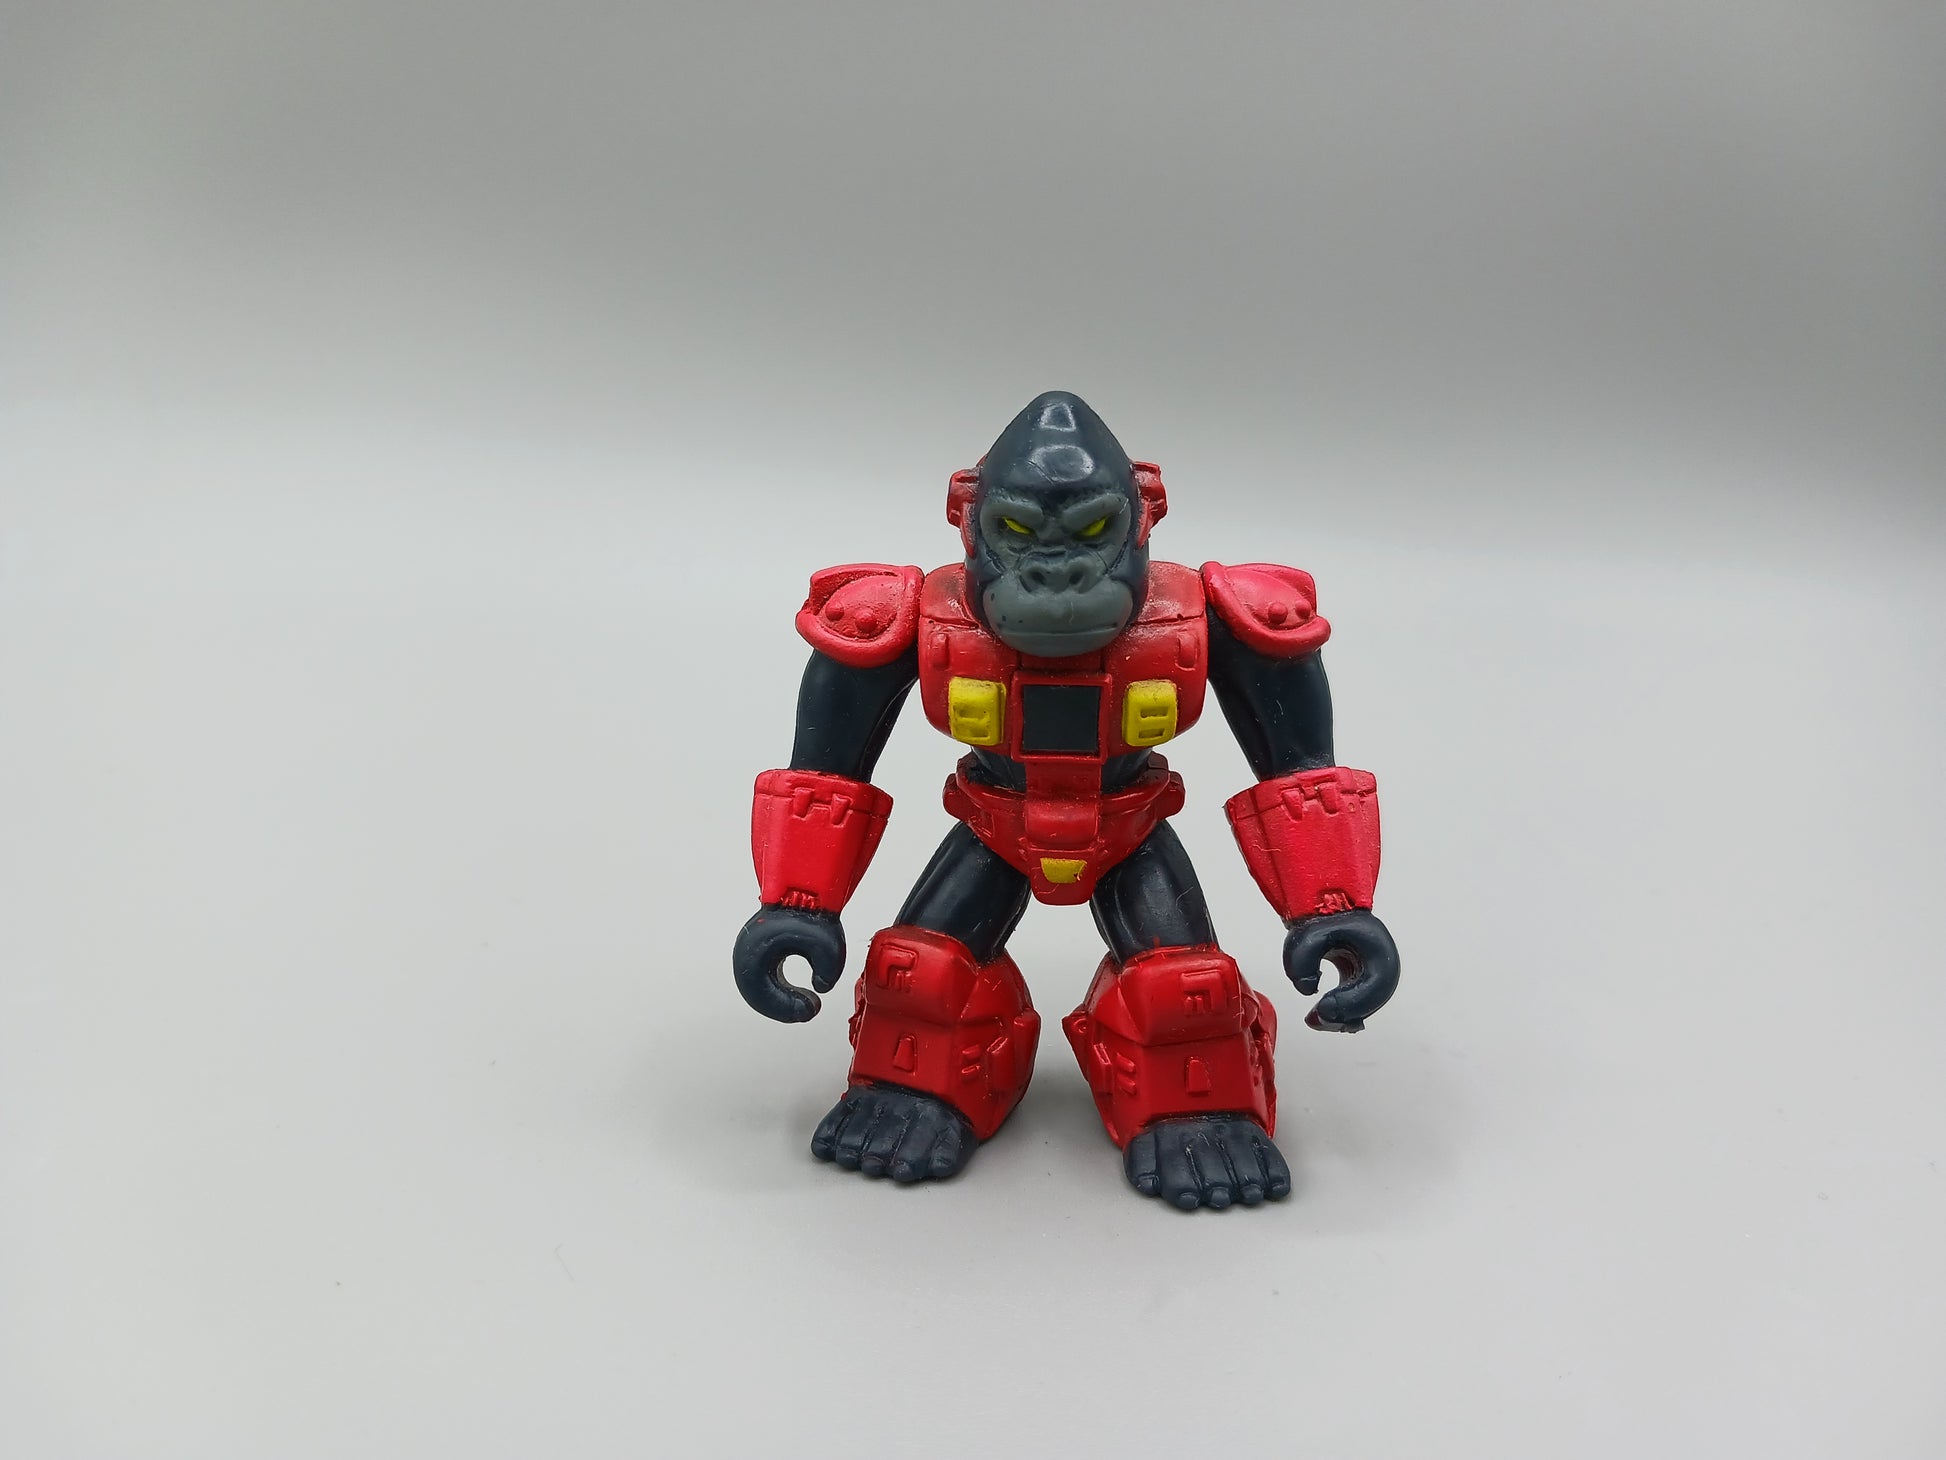 Gargantuan Gorilla Red Armor 